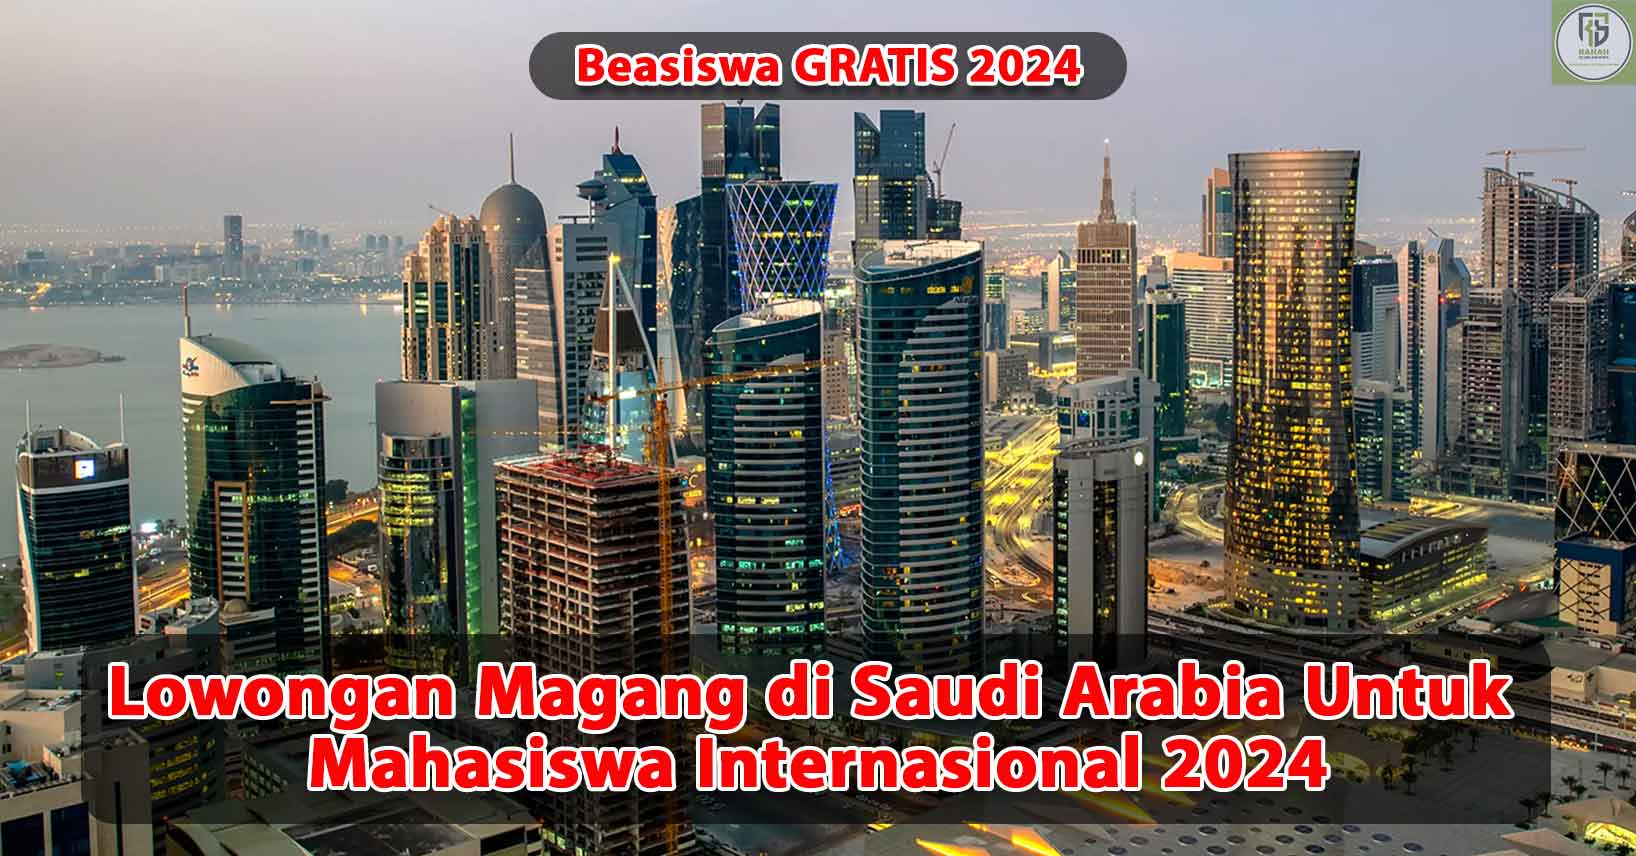 Lowongan-Magang-di-Saudi-Arabia-Untuk-Mahasiswa-Internasional-2024